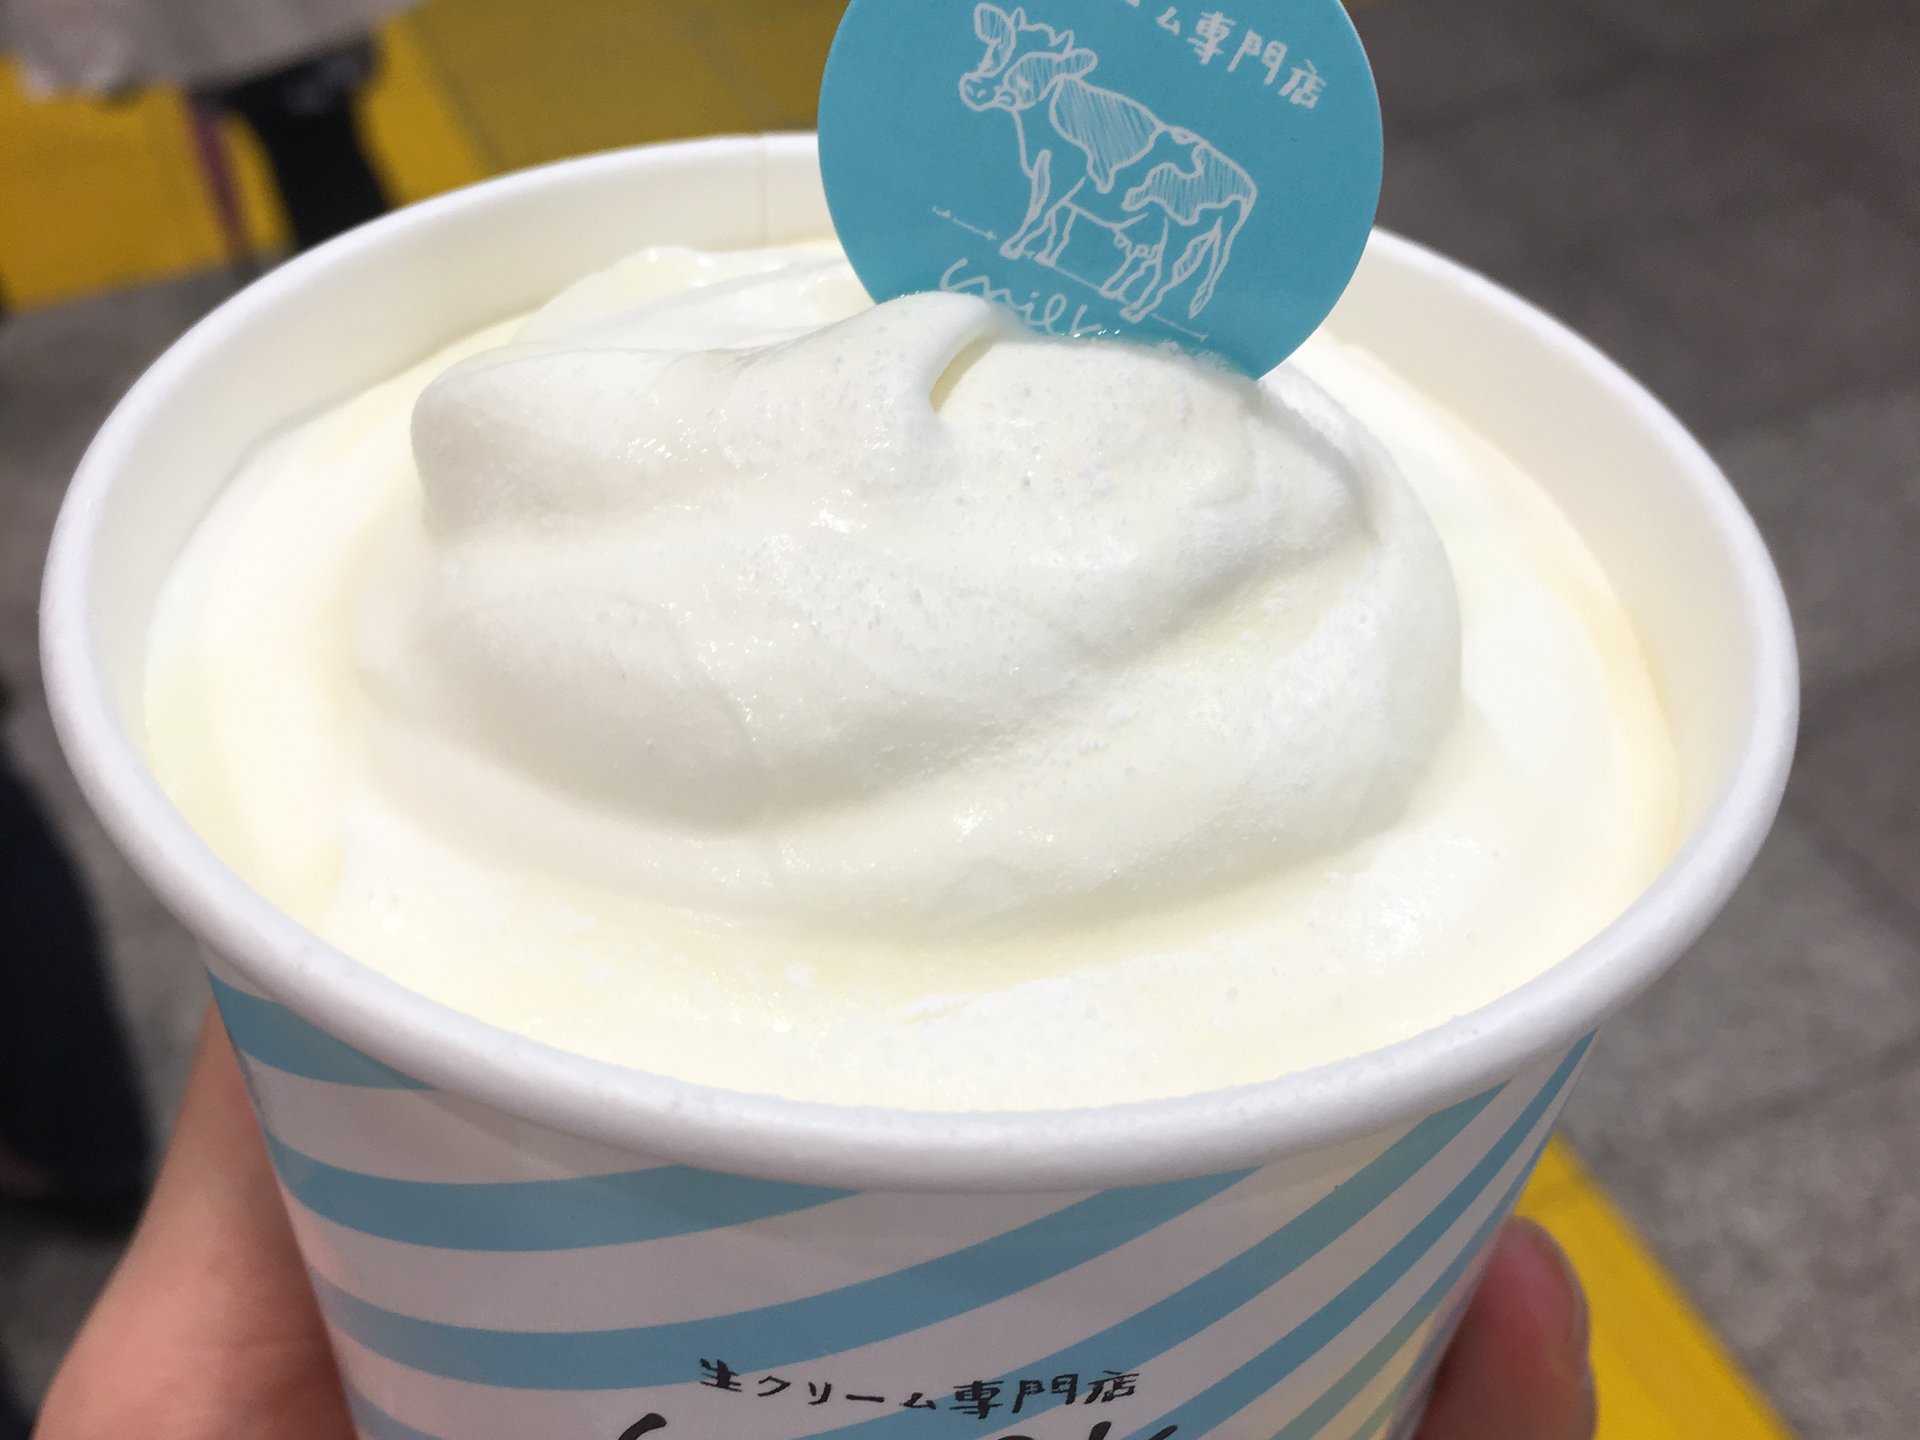 原宿の行列店がテイクアウト専門店をオープン！
濃厚なミルクを堪能